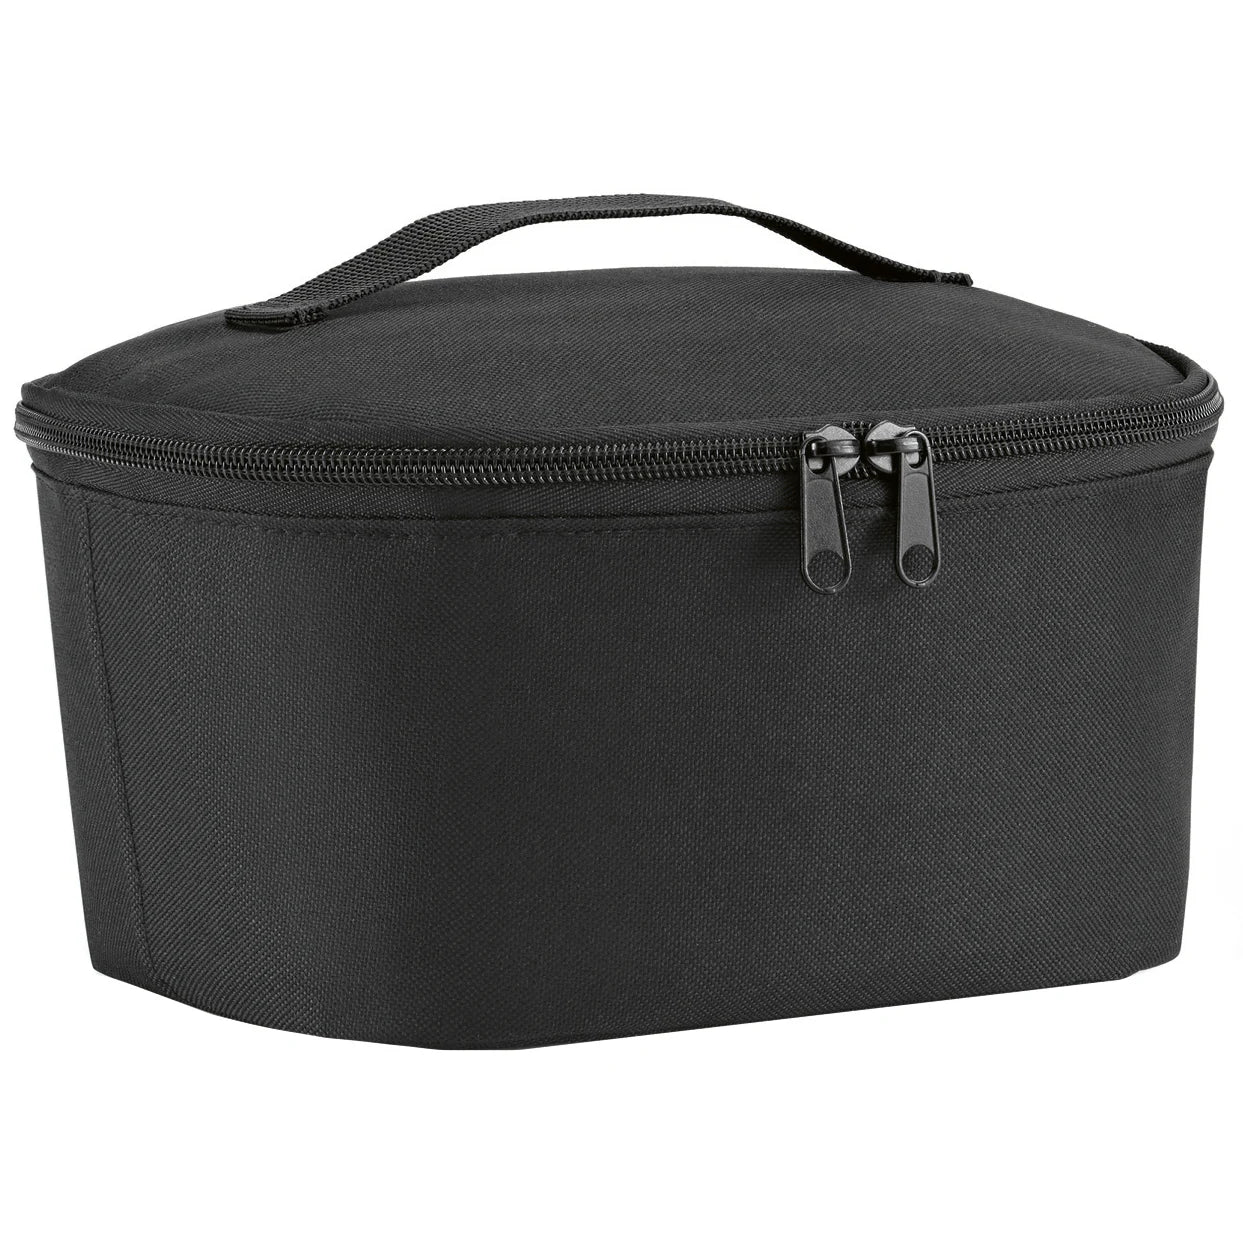 Reisenthel Shopping Coolerbag S Poche 22 cm - Noir